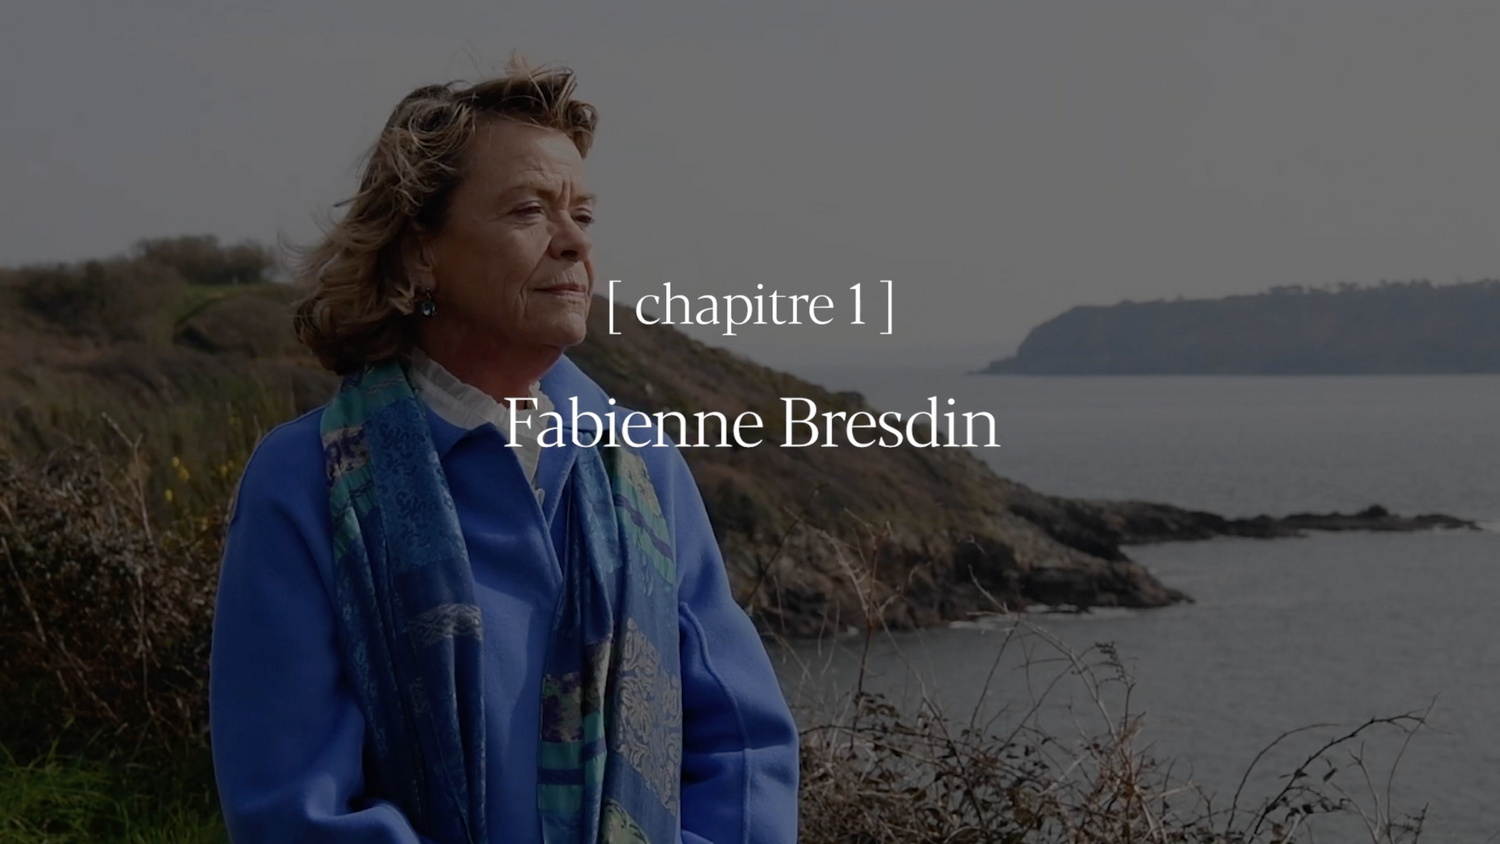 Load video: Fabienne - Video de Présentation